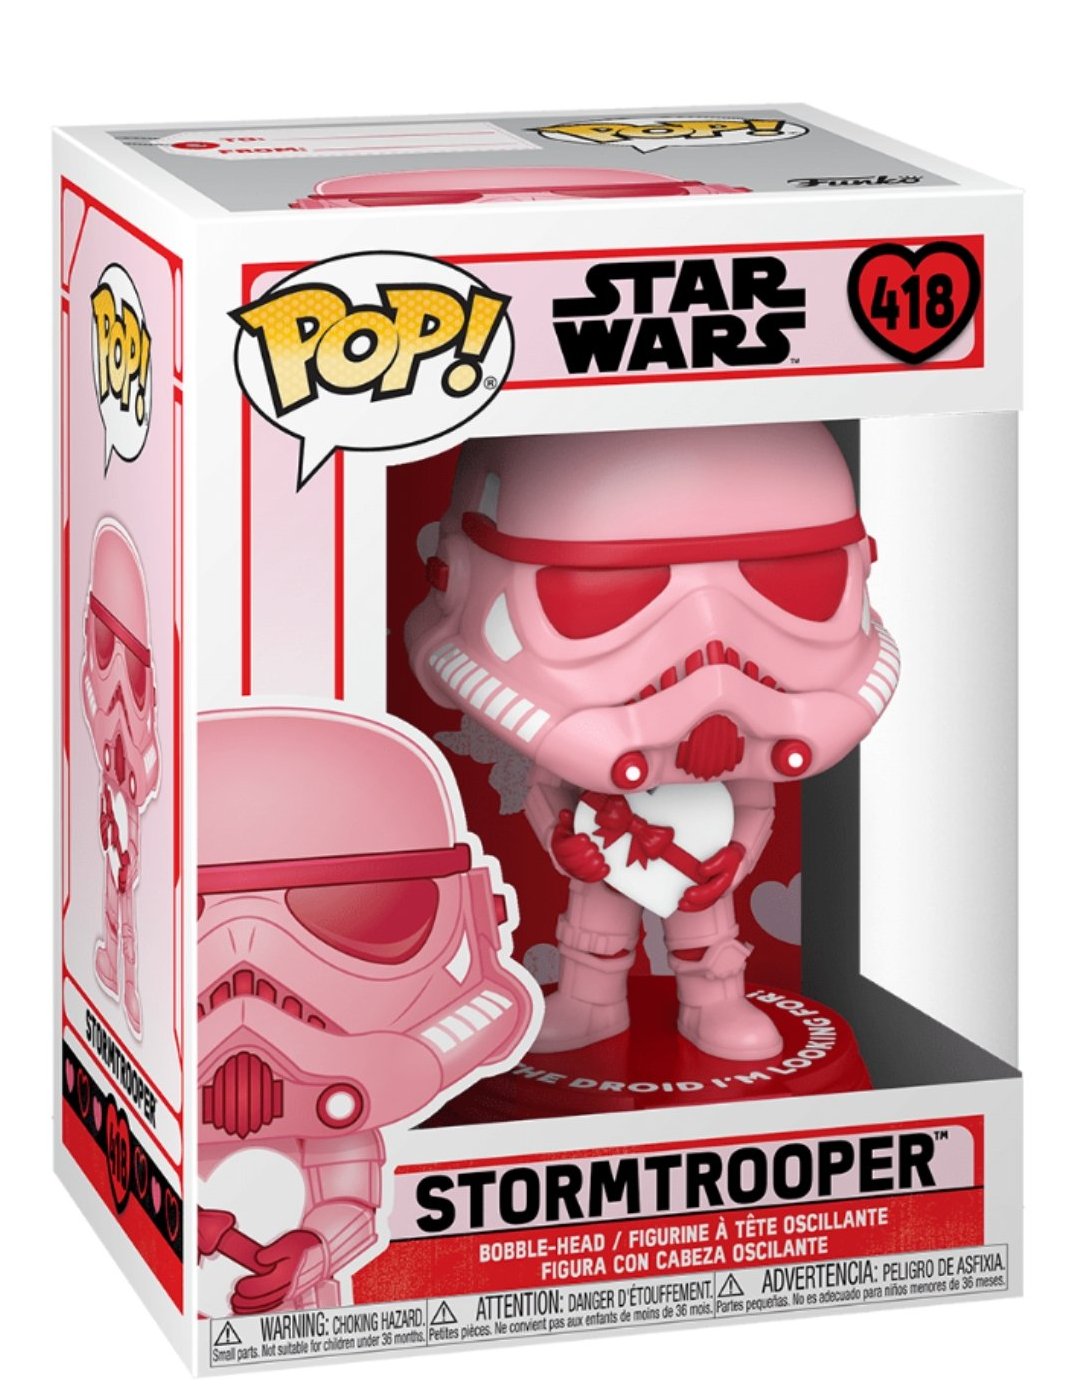 Star Wars Stormtrooper Valentine's Day Pink Funko Pop! Vinyl figure